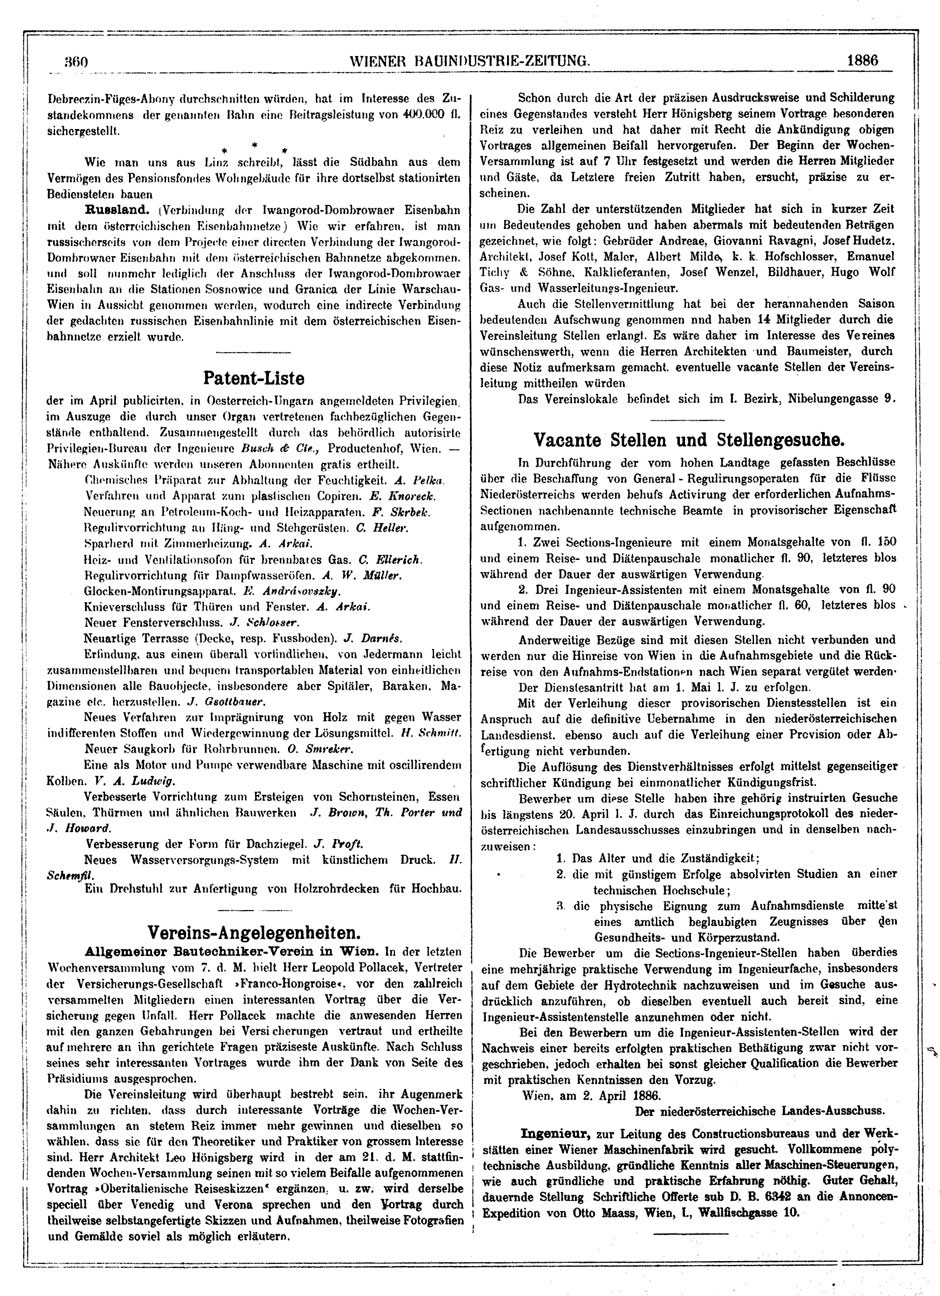 Wiener Bauindustrie-Zeitung 1885-86; Seite 360